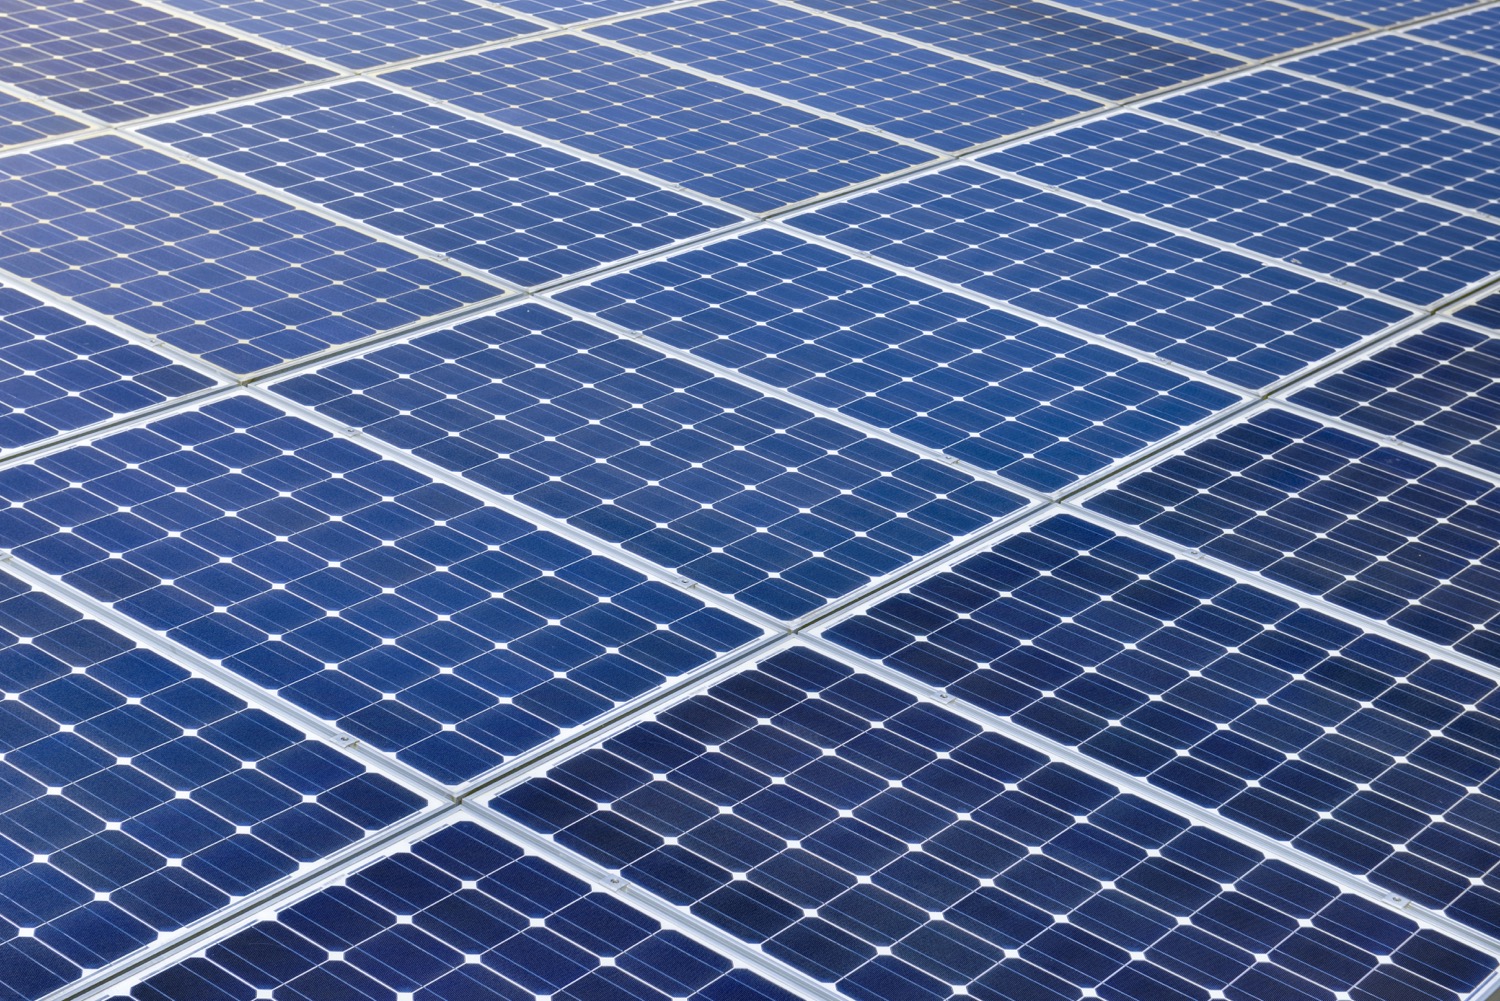 I vantaggi economici di un’impianto fotovoltaico